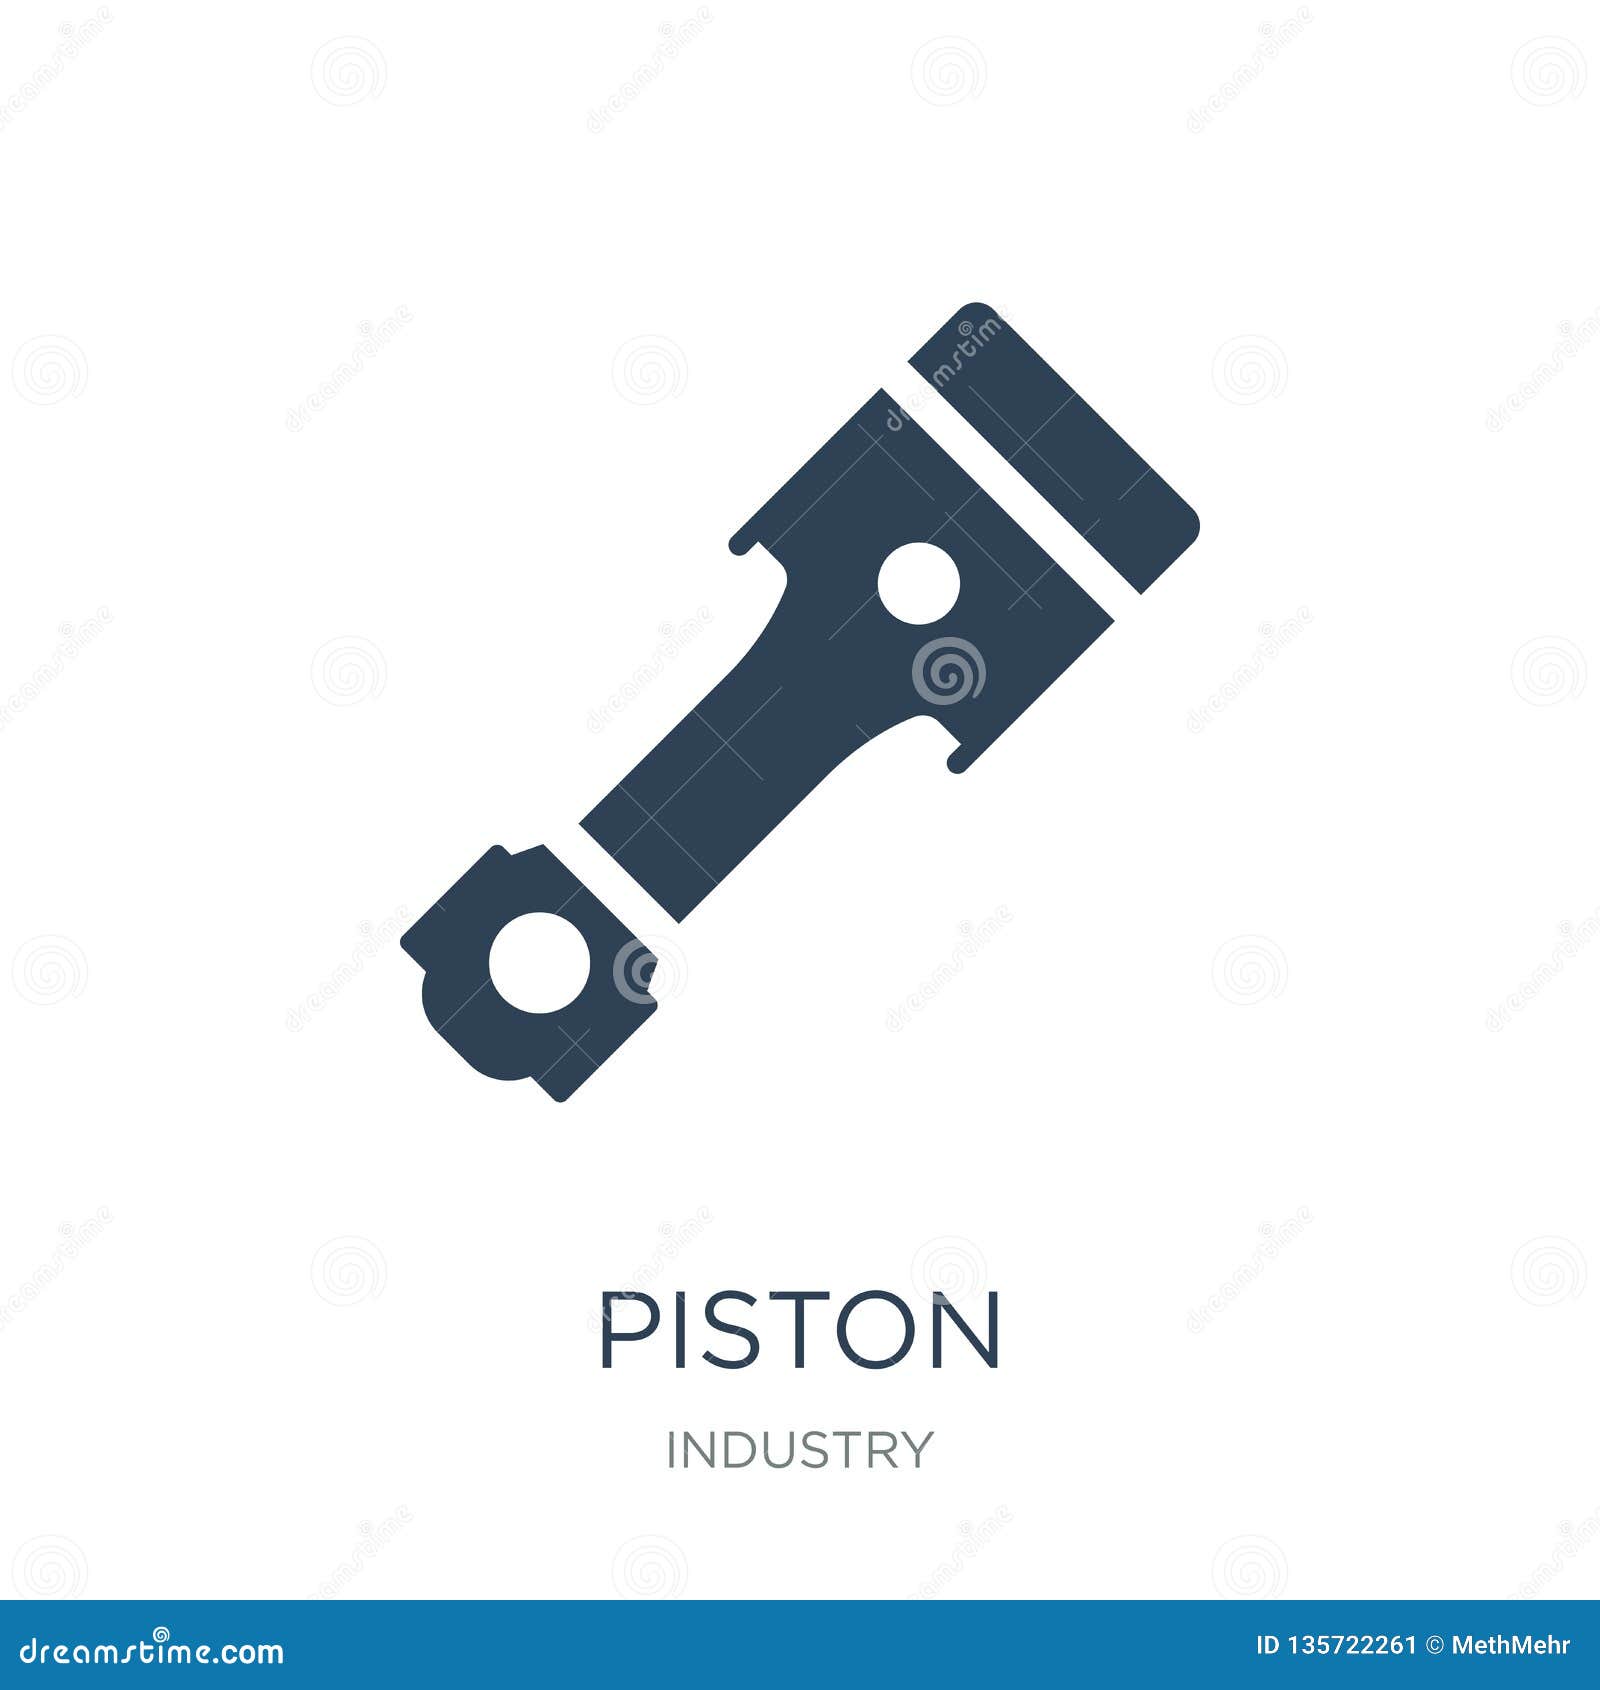 piston icon in trendy  style. piston icon  on white background. piston  icon simple and modern flat  for